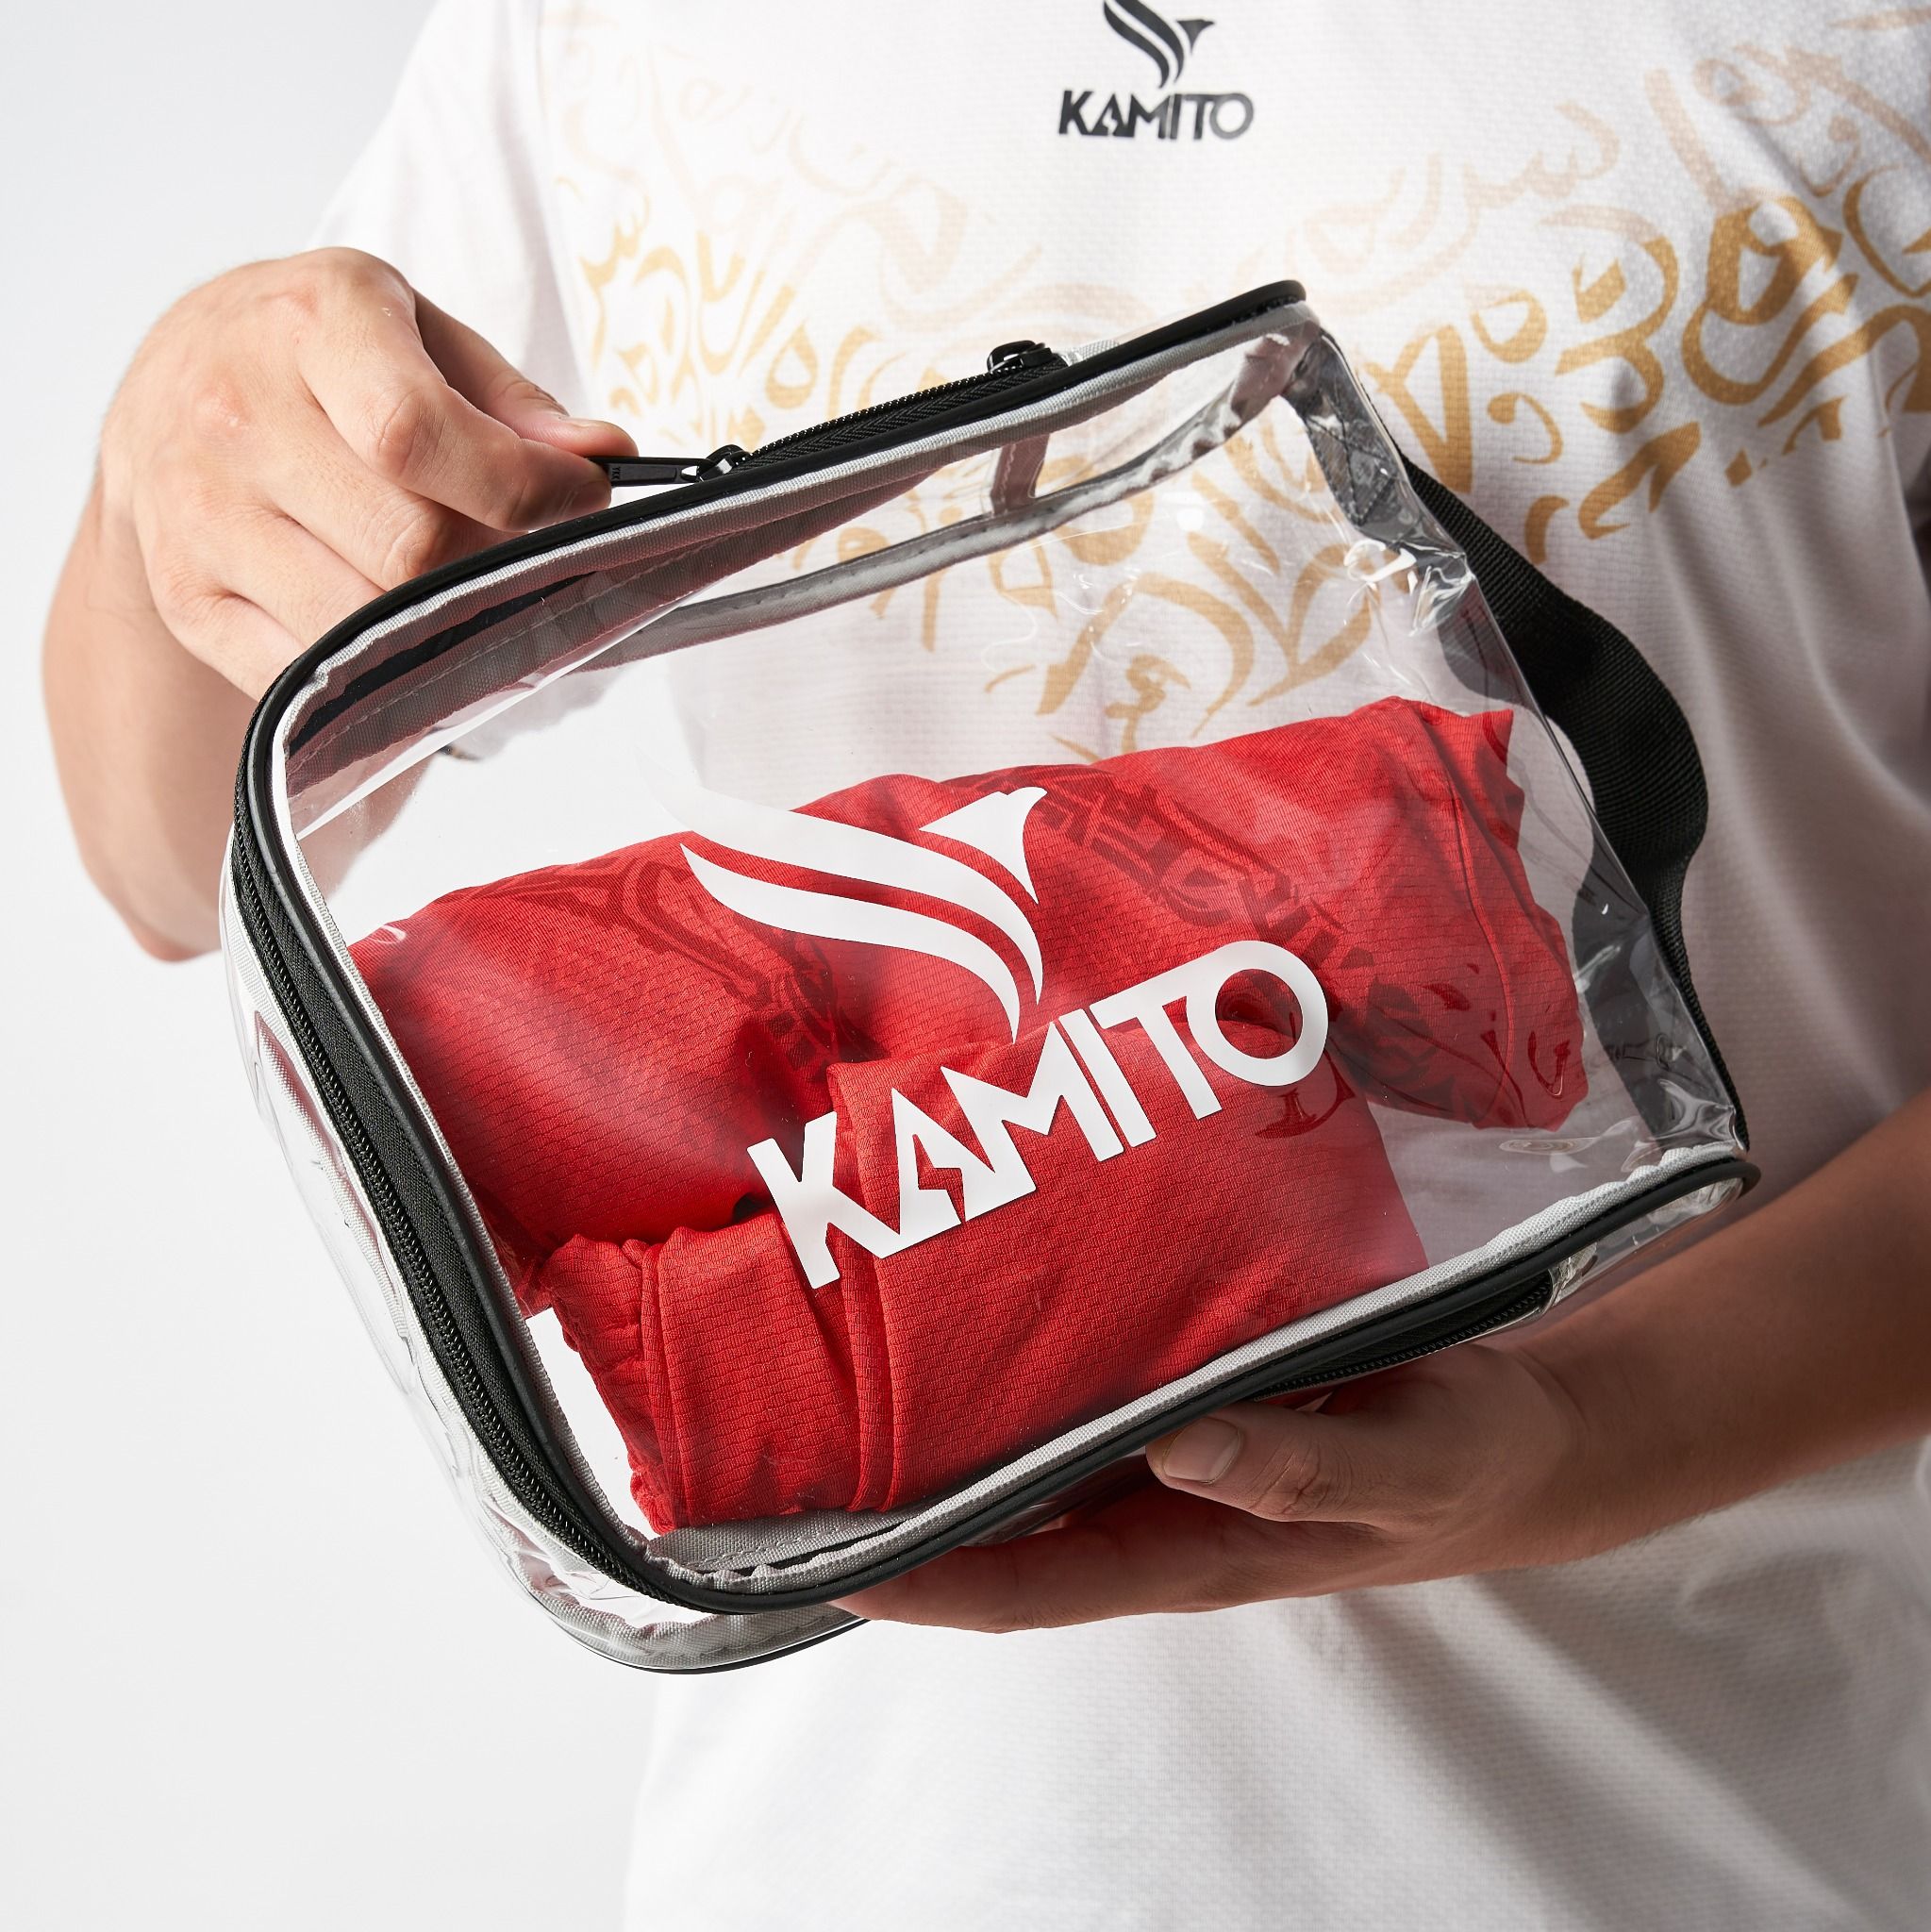  Túi Kamito đa năng trong suốt 